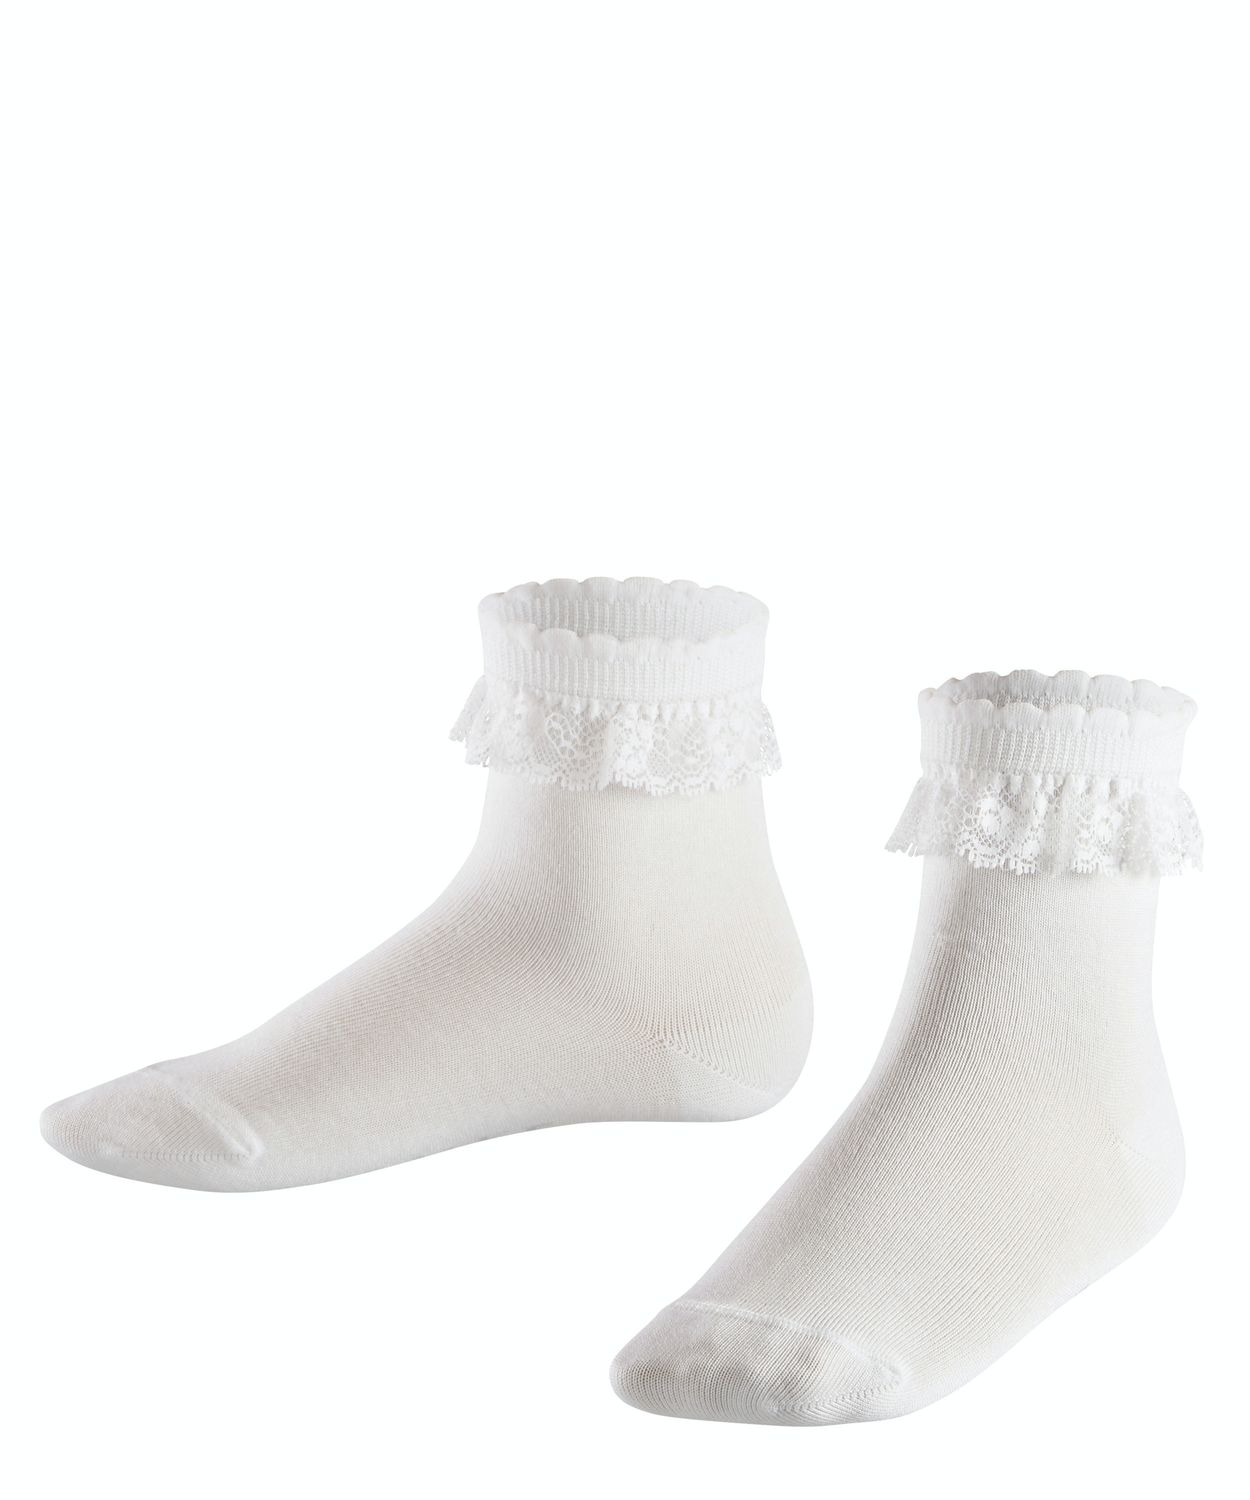 Falke Kinder Socken Romantic Lace Hersteller: Falke Bestellnummer:4043874347341